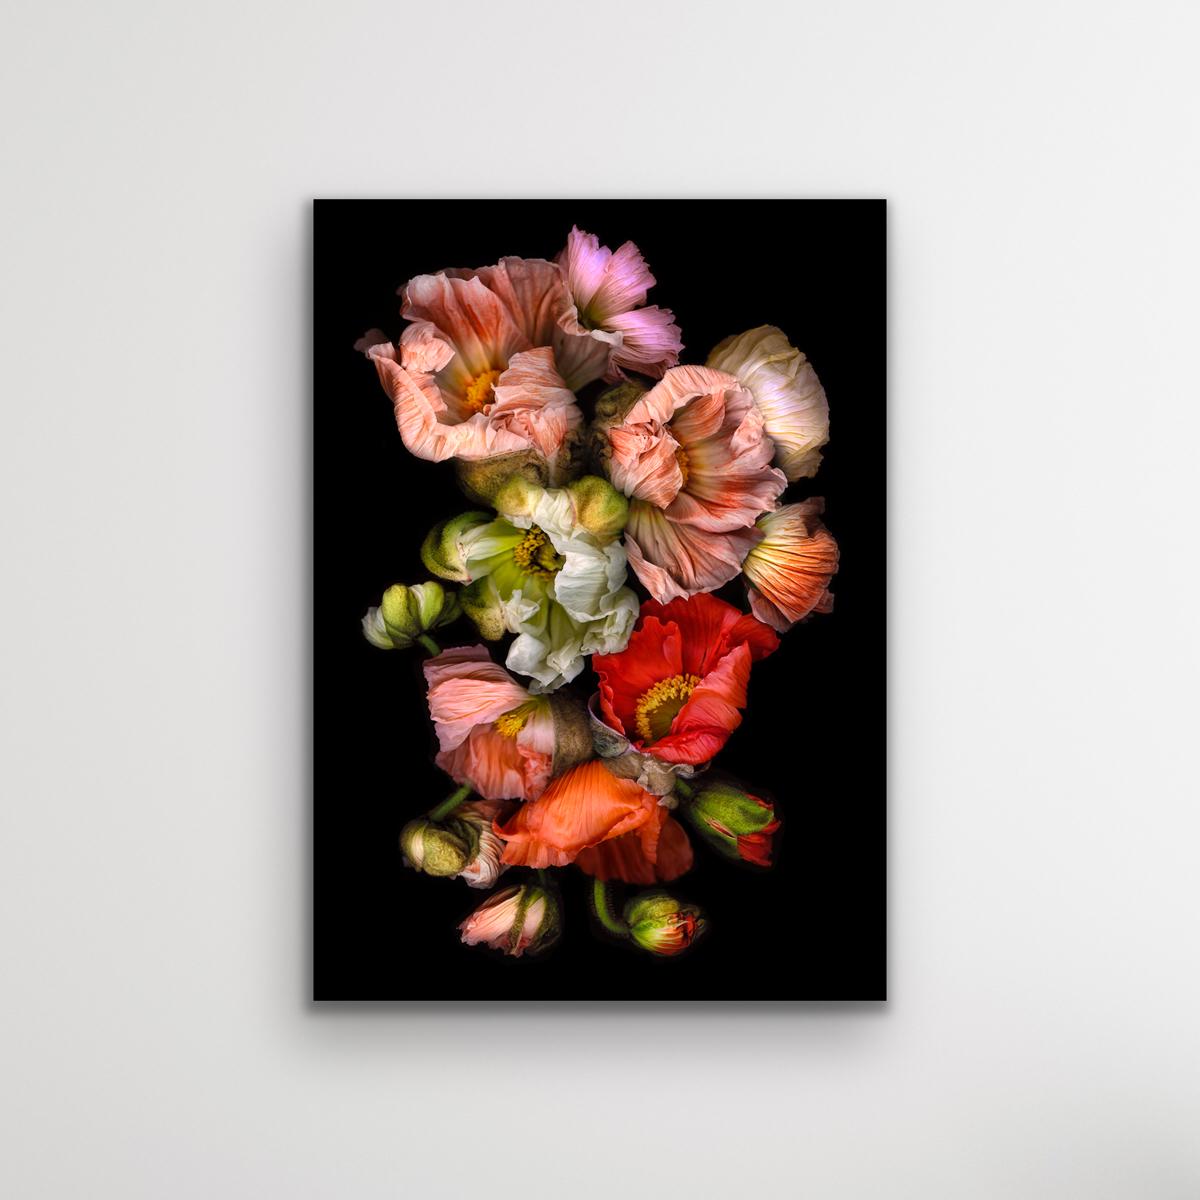 Furs noires, photographies dramatiques, œuvres d'art florales vibrantes, tirages chromagéniques - Réalisme Photograph par Allan Forsyth